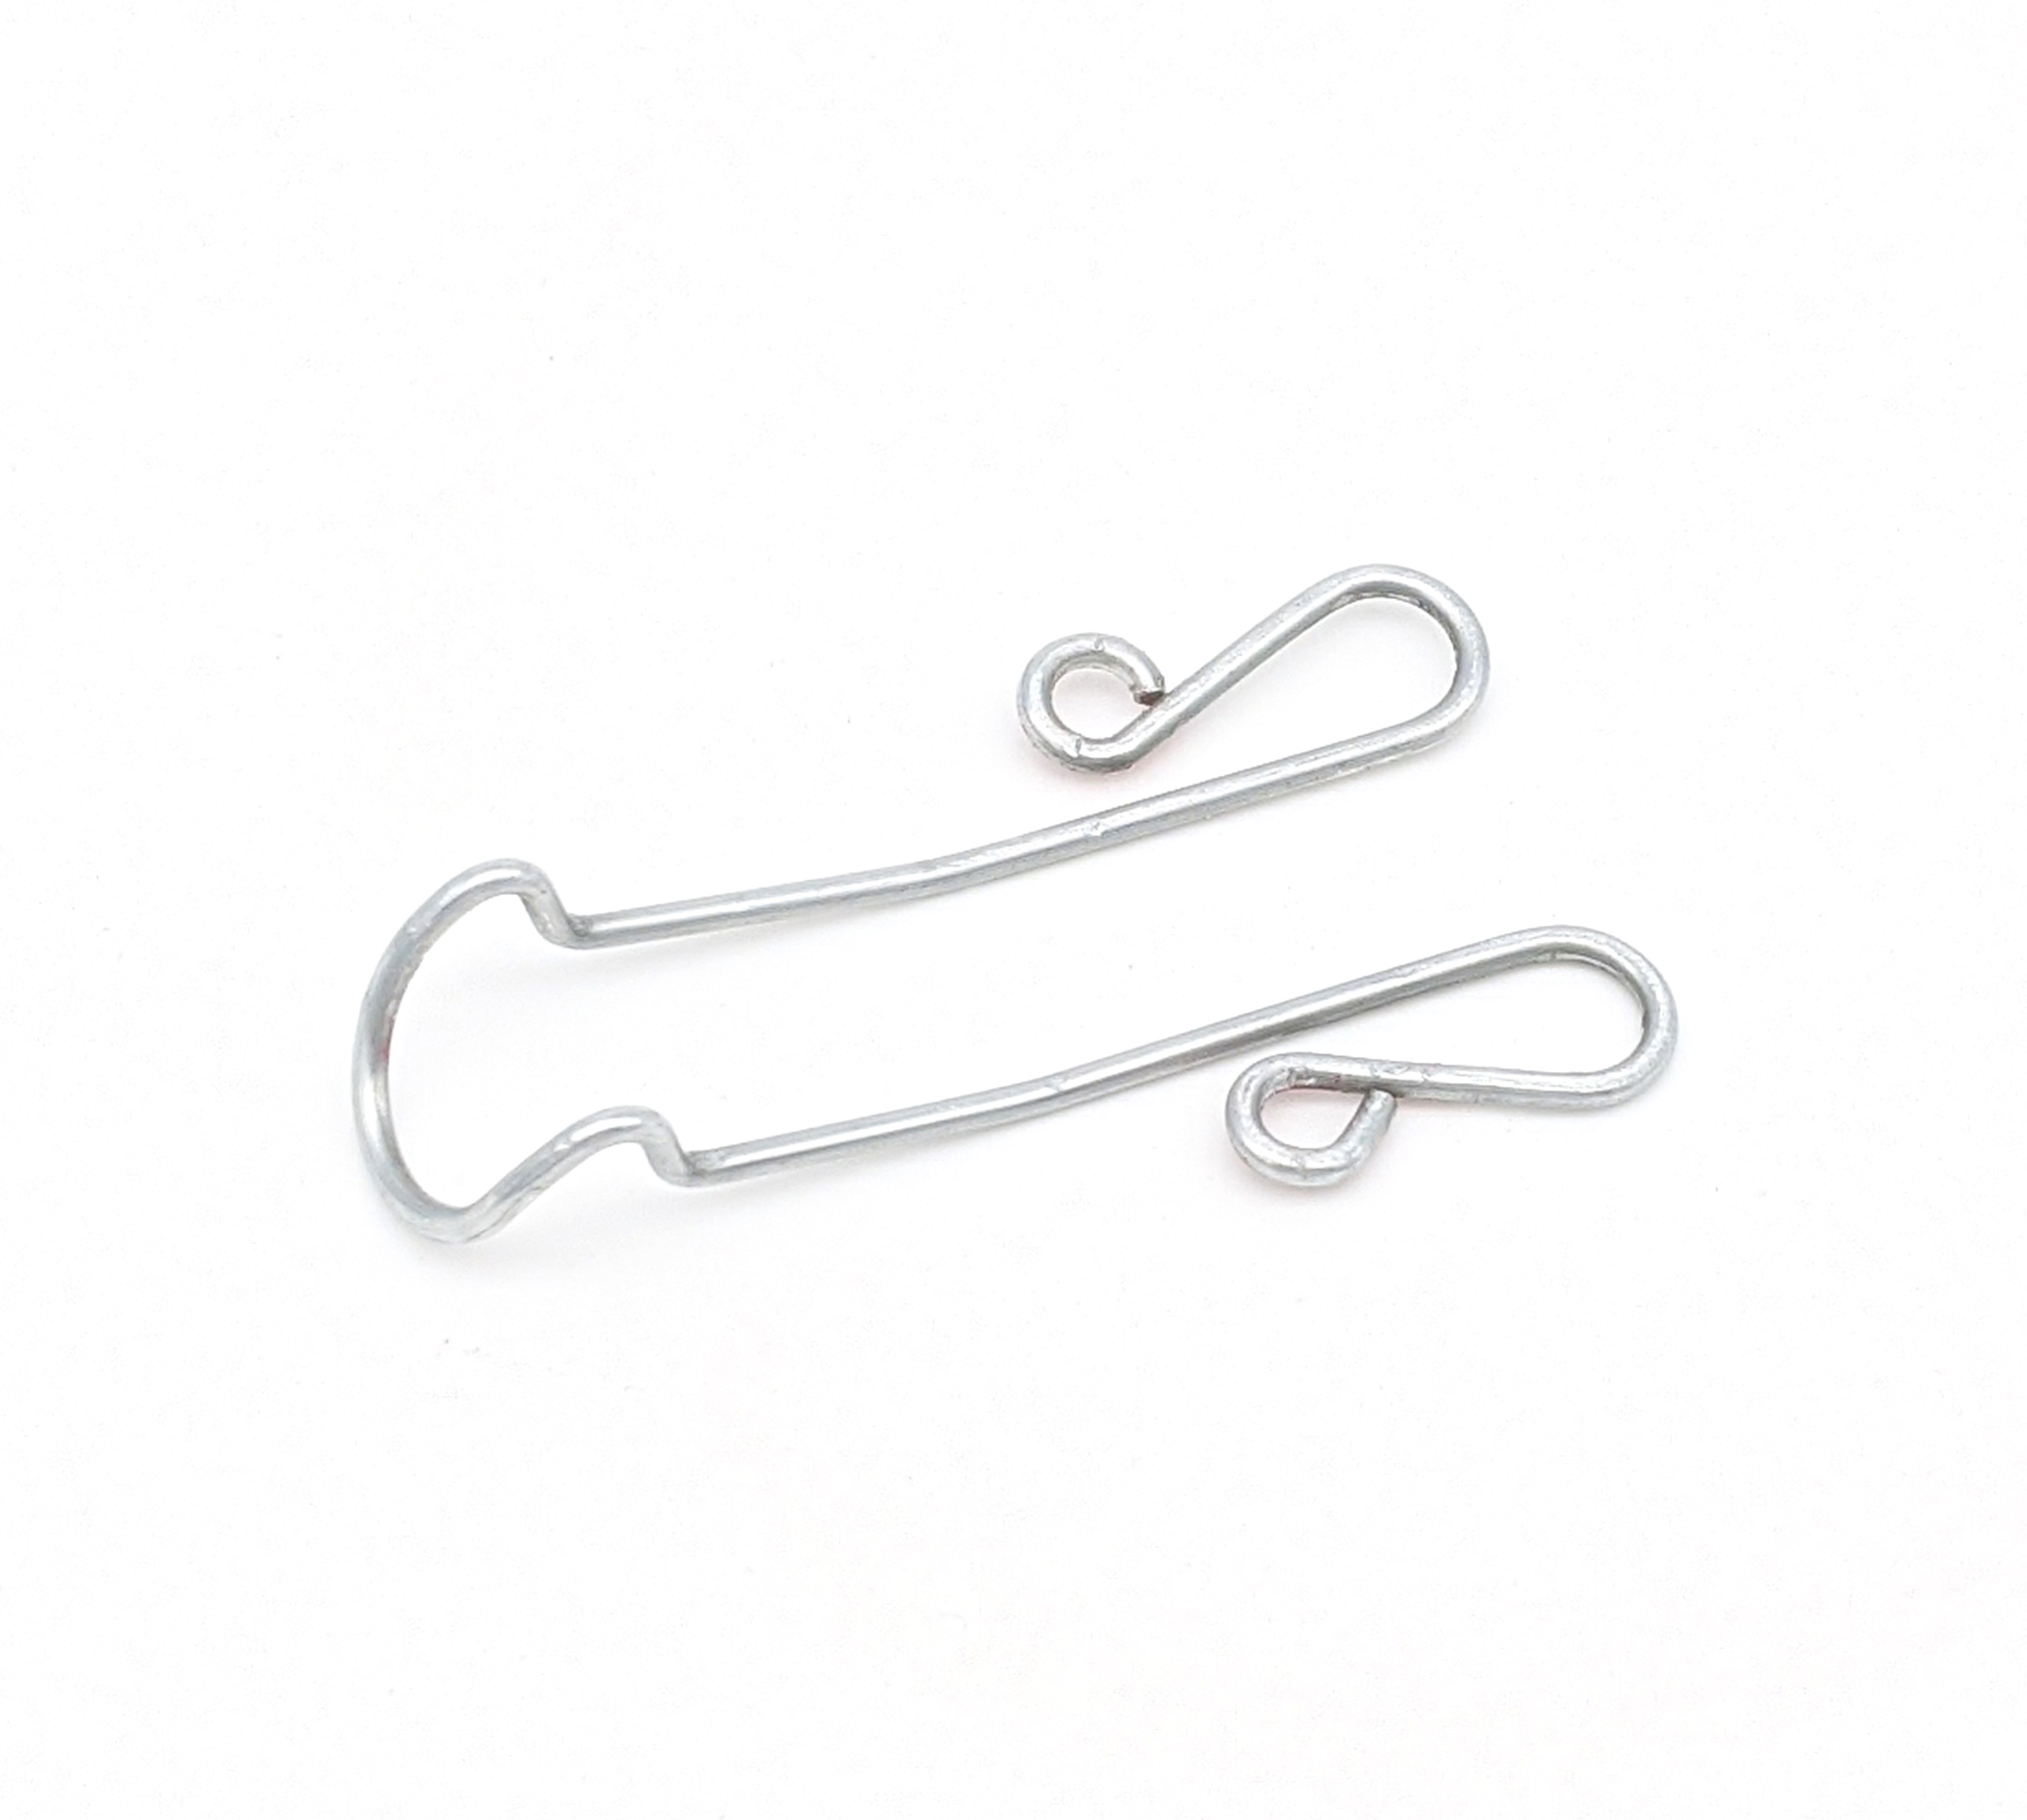 Galvanized wire clips